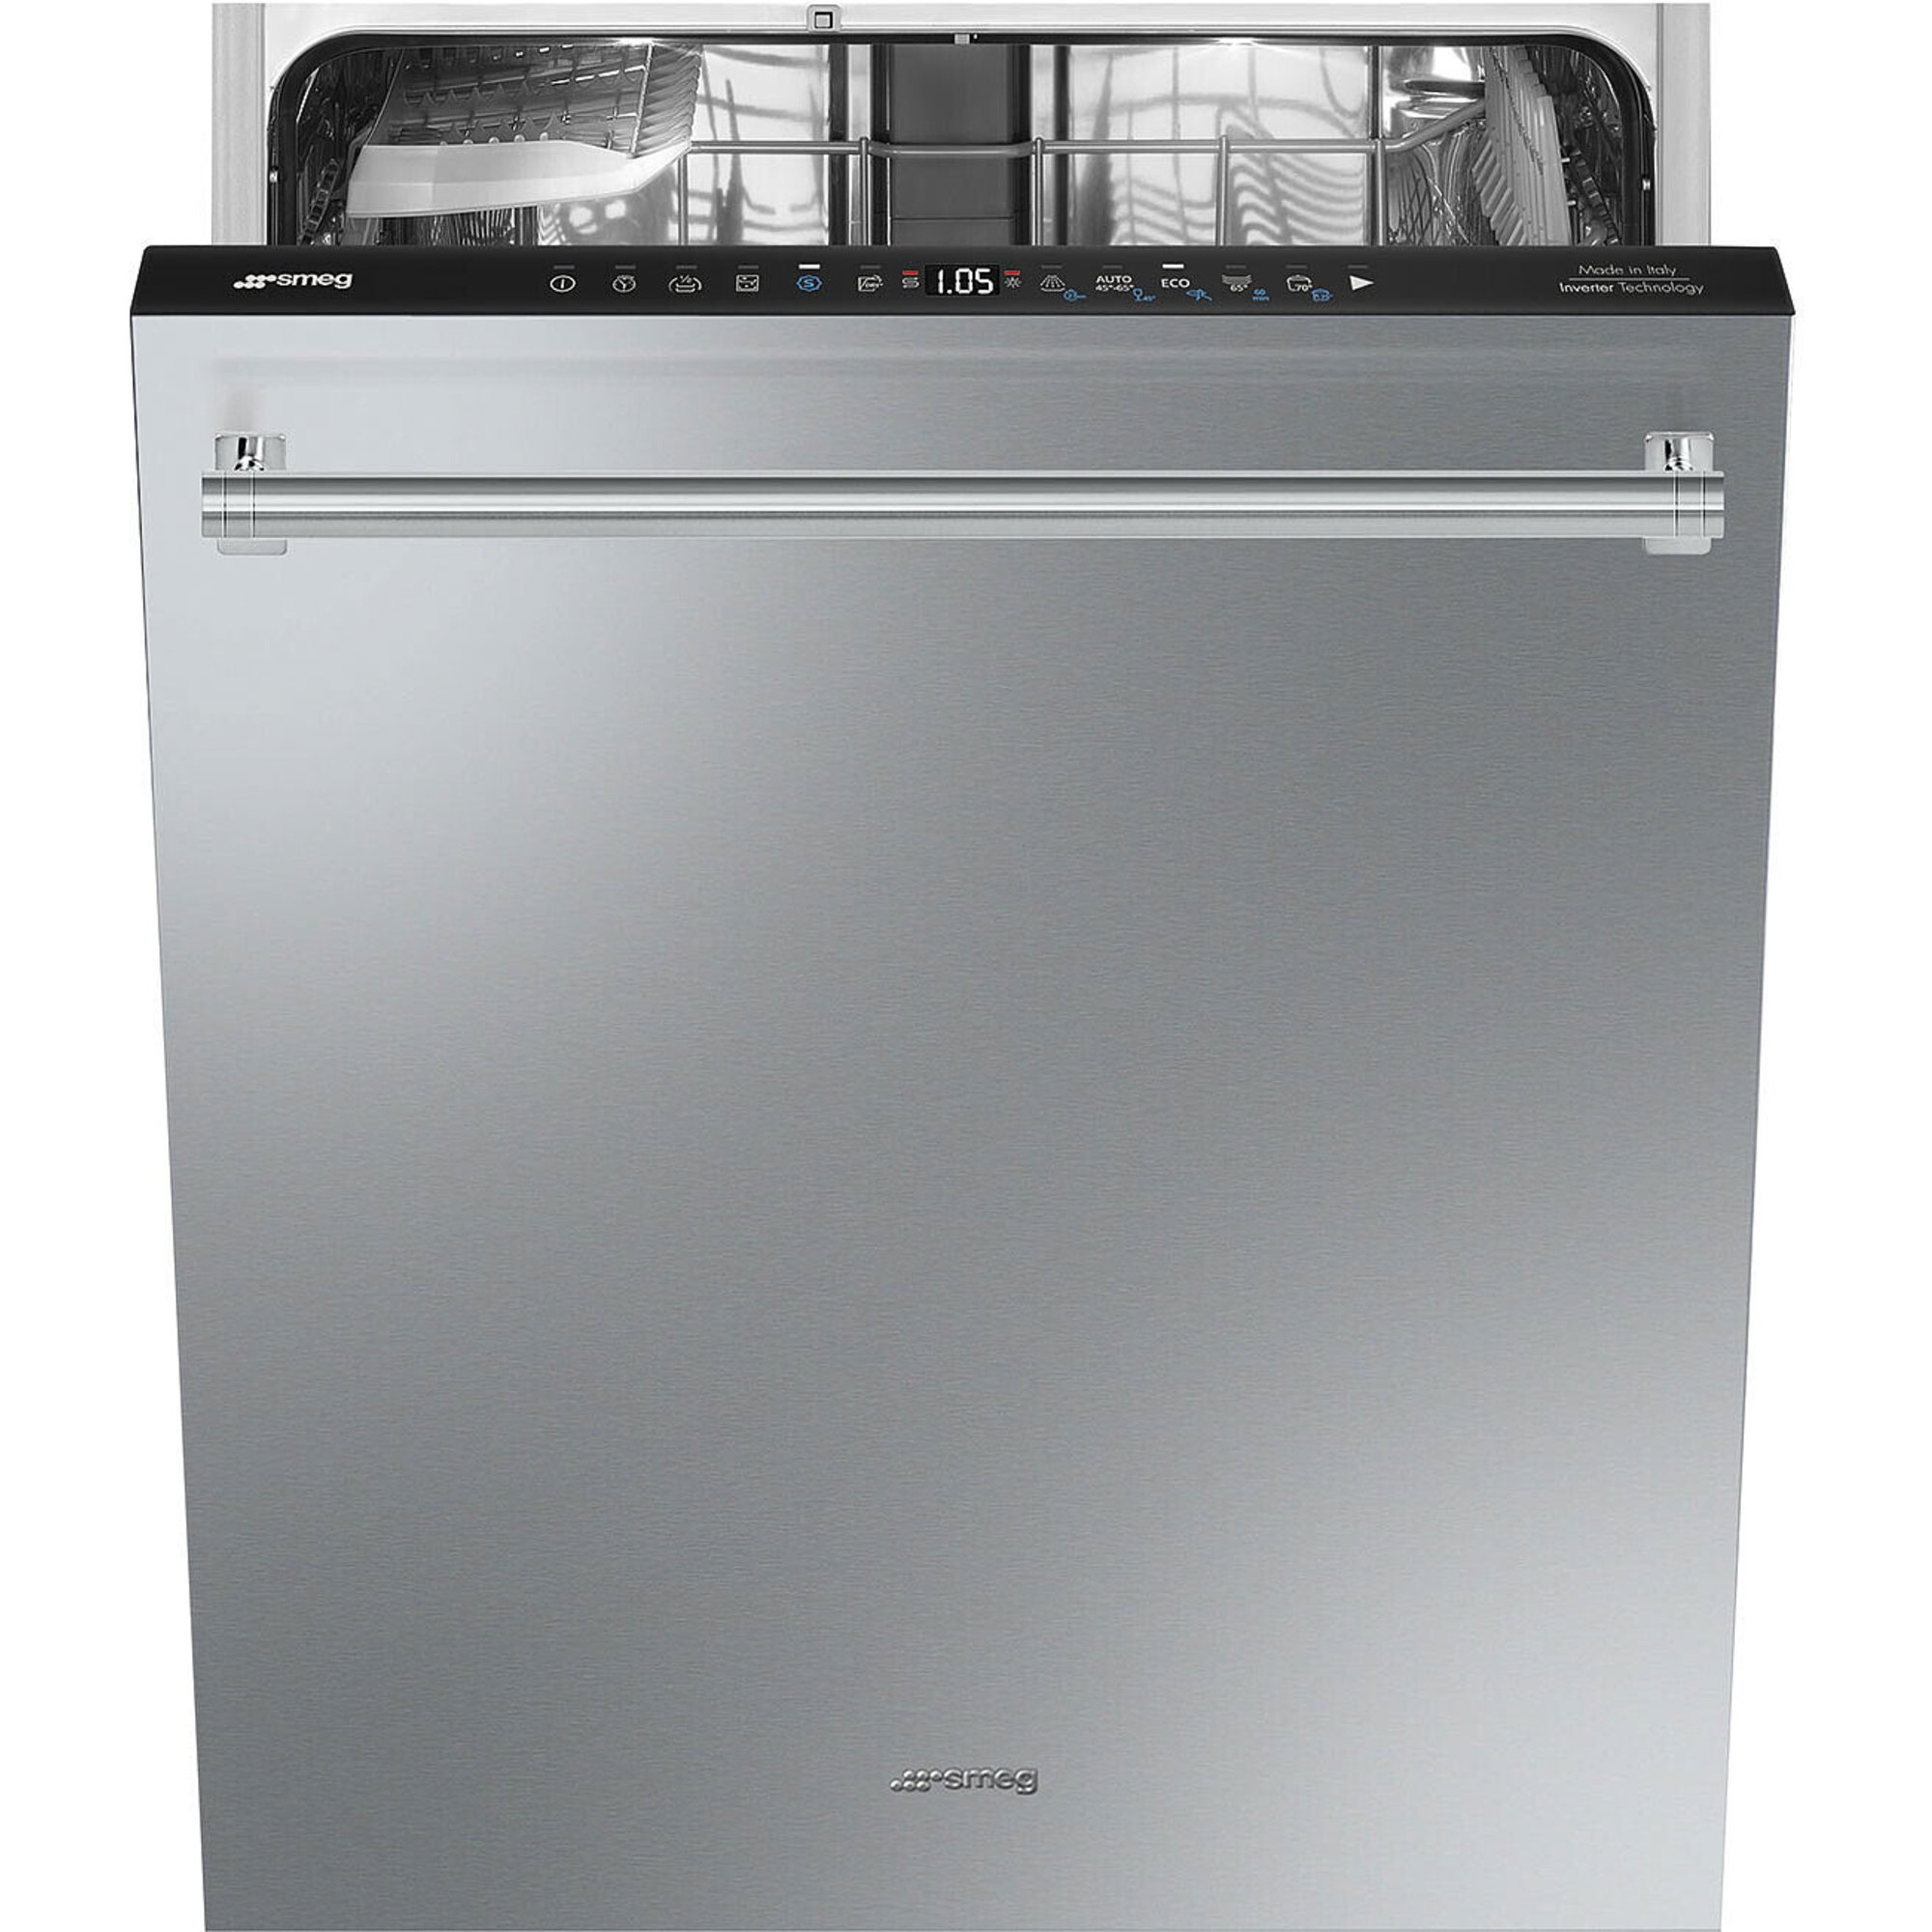 Billede af Smeg STX235CLLO opvaskemaskine til underbygning